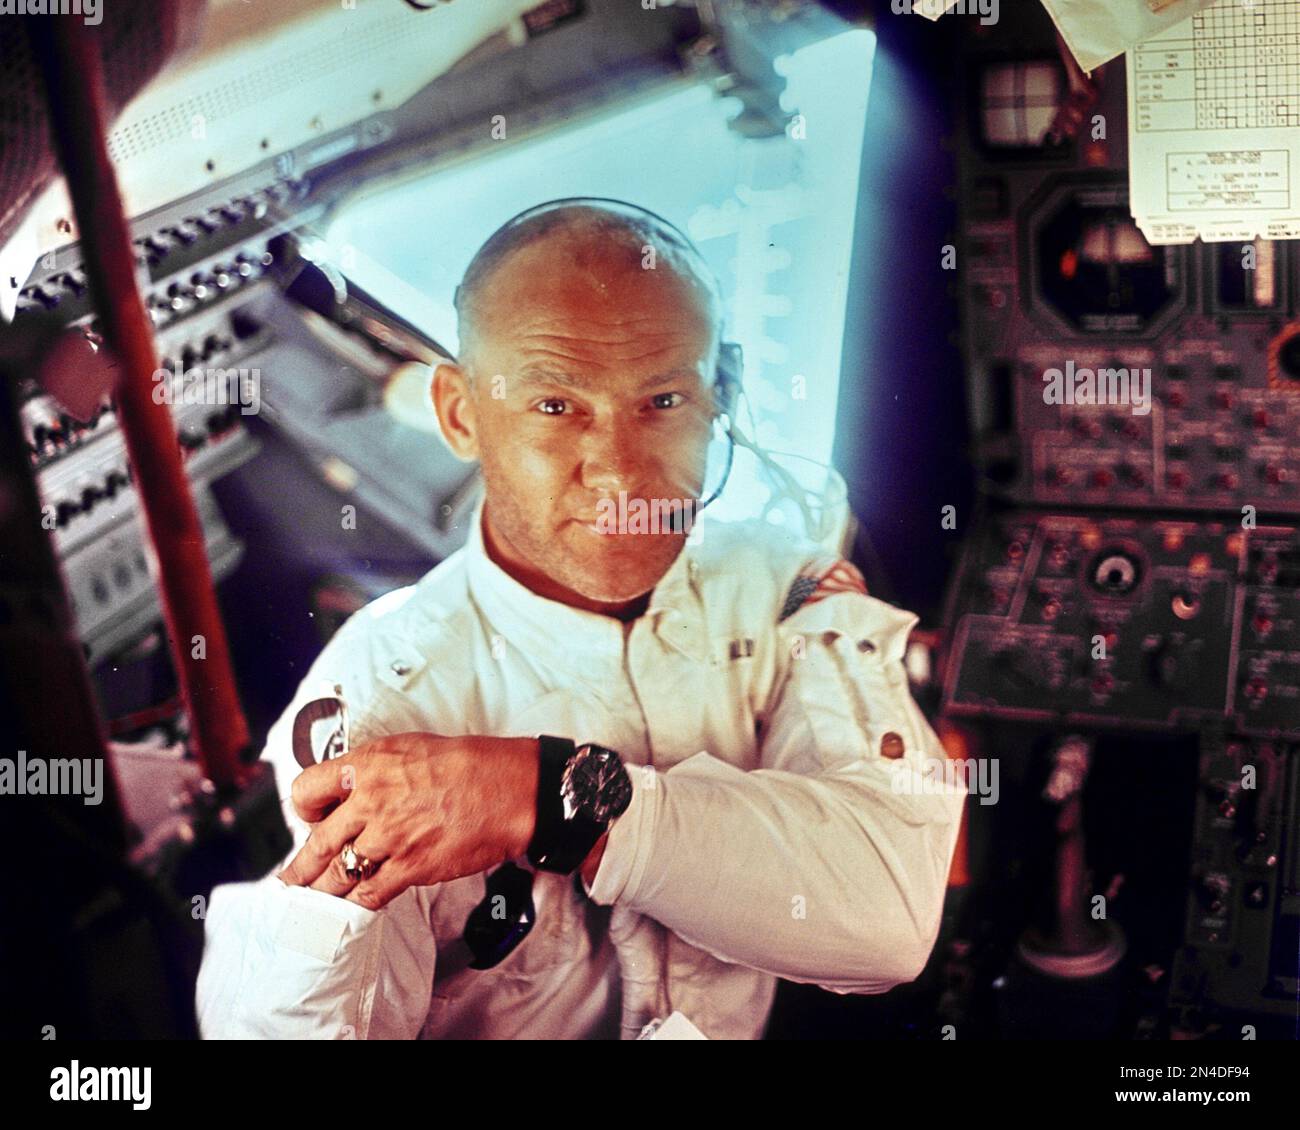 Diese Innenansicht des Apollo 11 Mondmoduls zeigt Astronaut Edwin E. Aldrin, Jr., Mondmodulpilot, während der Mondlandemission. Dieses Bild wurde von Astronaut Neil A. Armstrong, Kommandant, vor der Mondlandung aufgenommen. Stockfoto